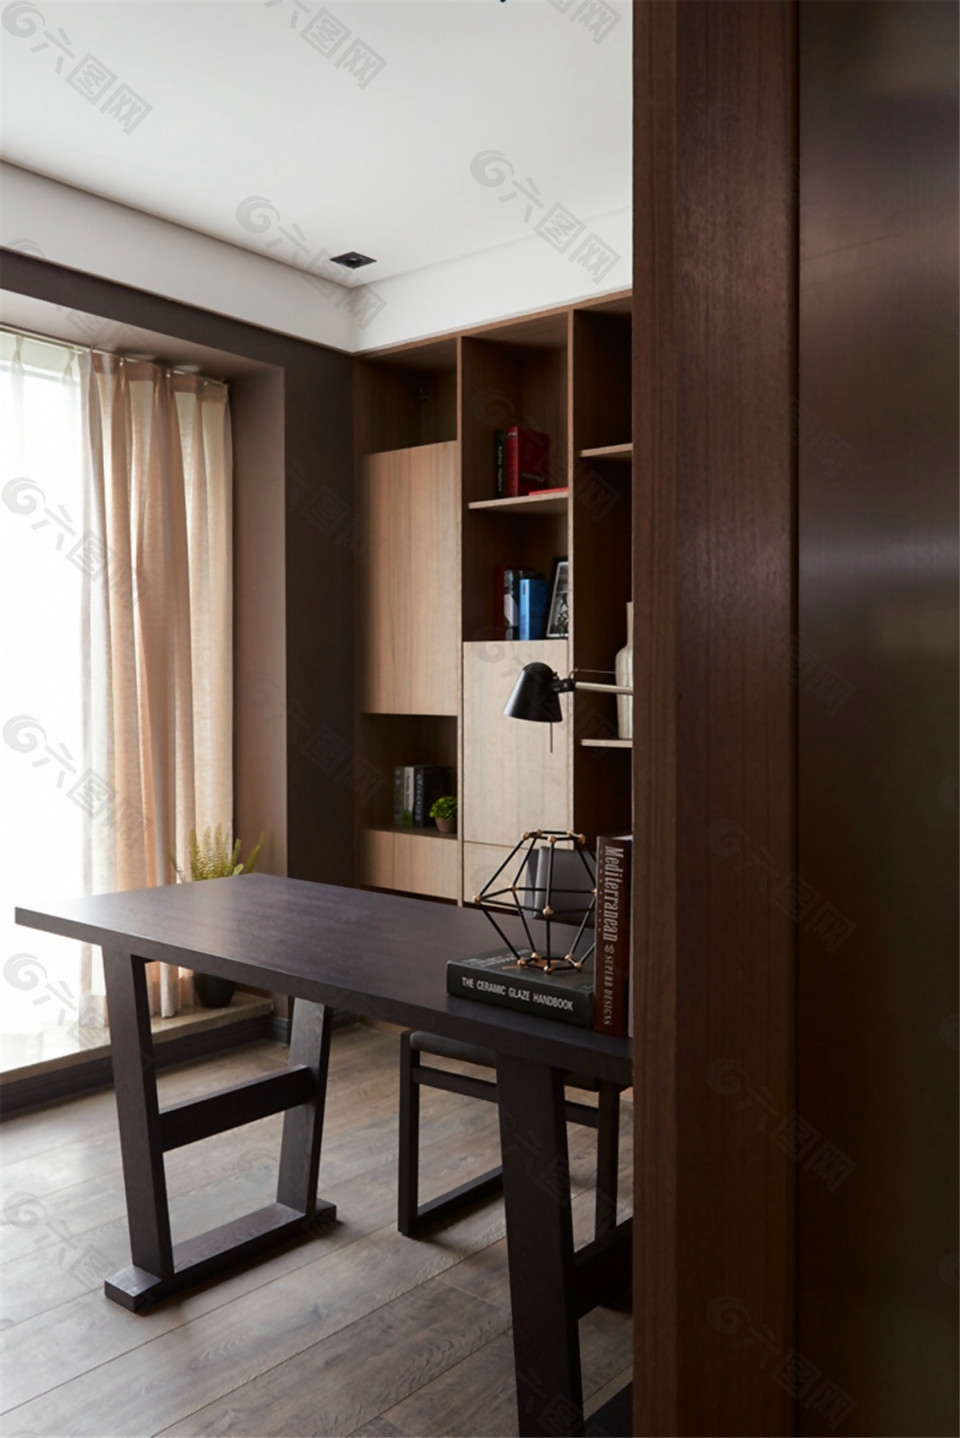 中式雅致客厅木制展示书架室内装修效果图